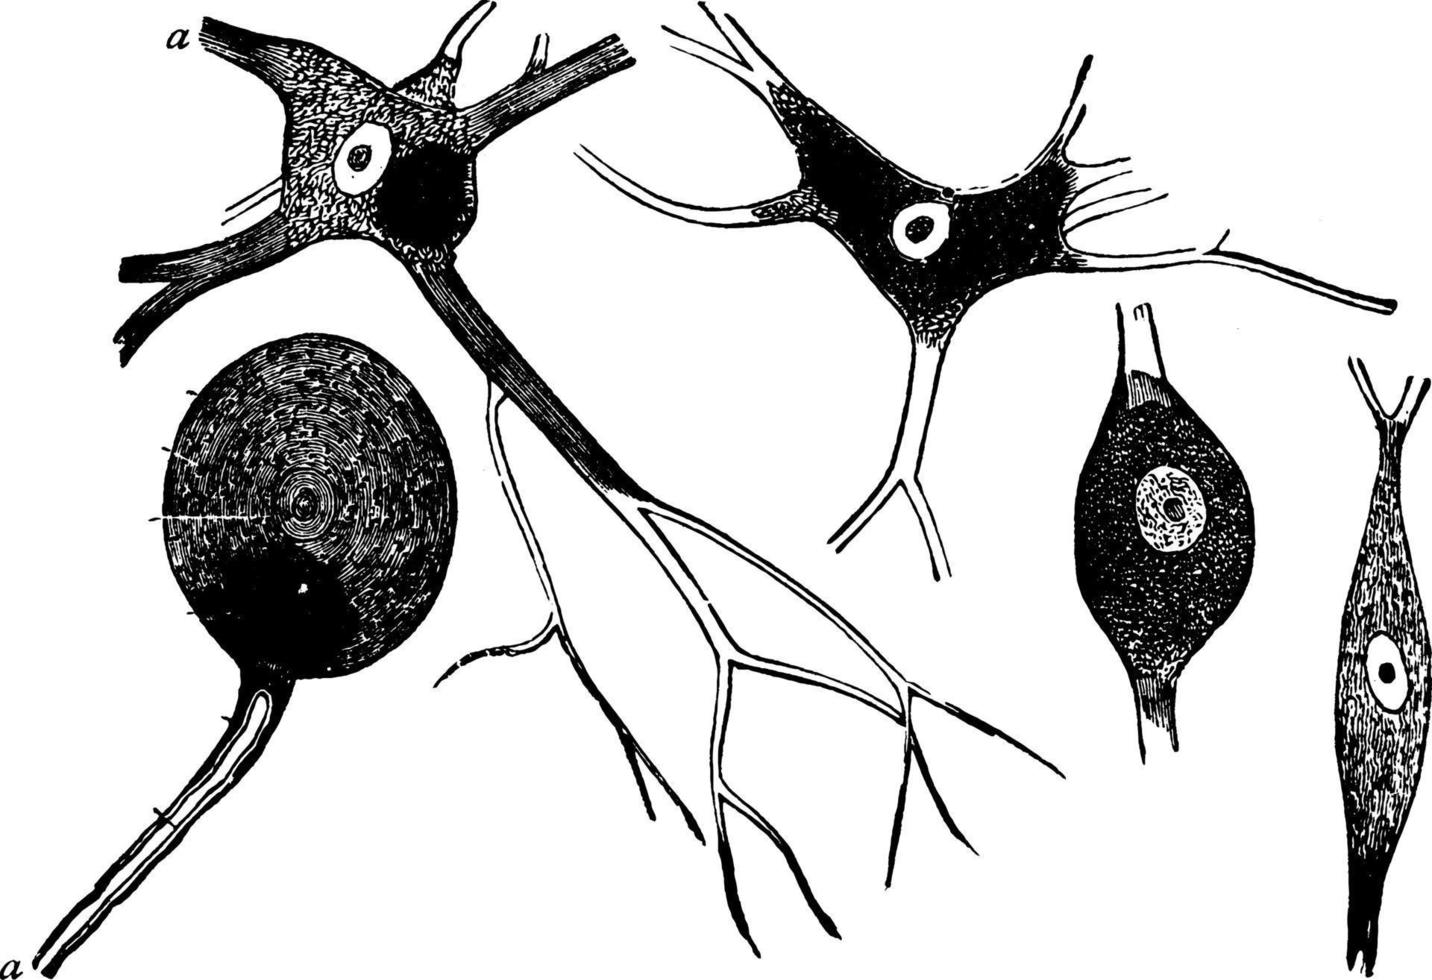 neurone de cellules nerveuses, illustration vintage. vecteur